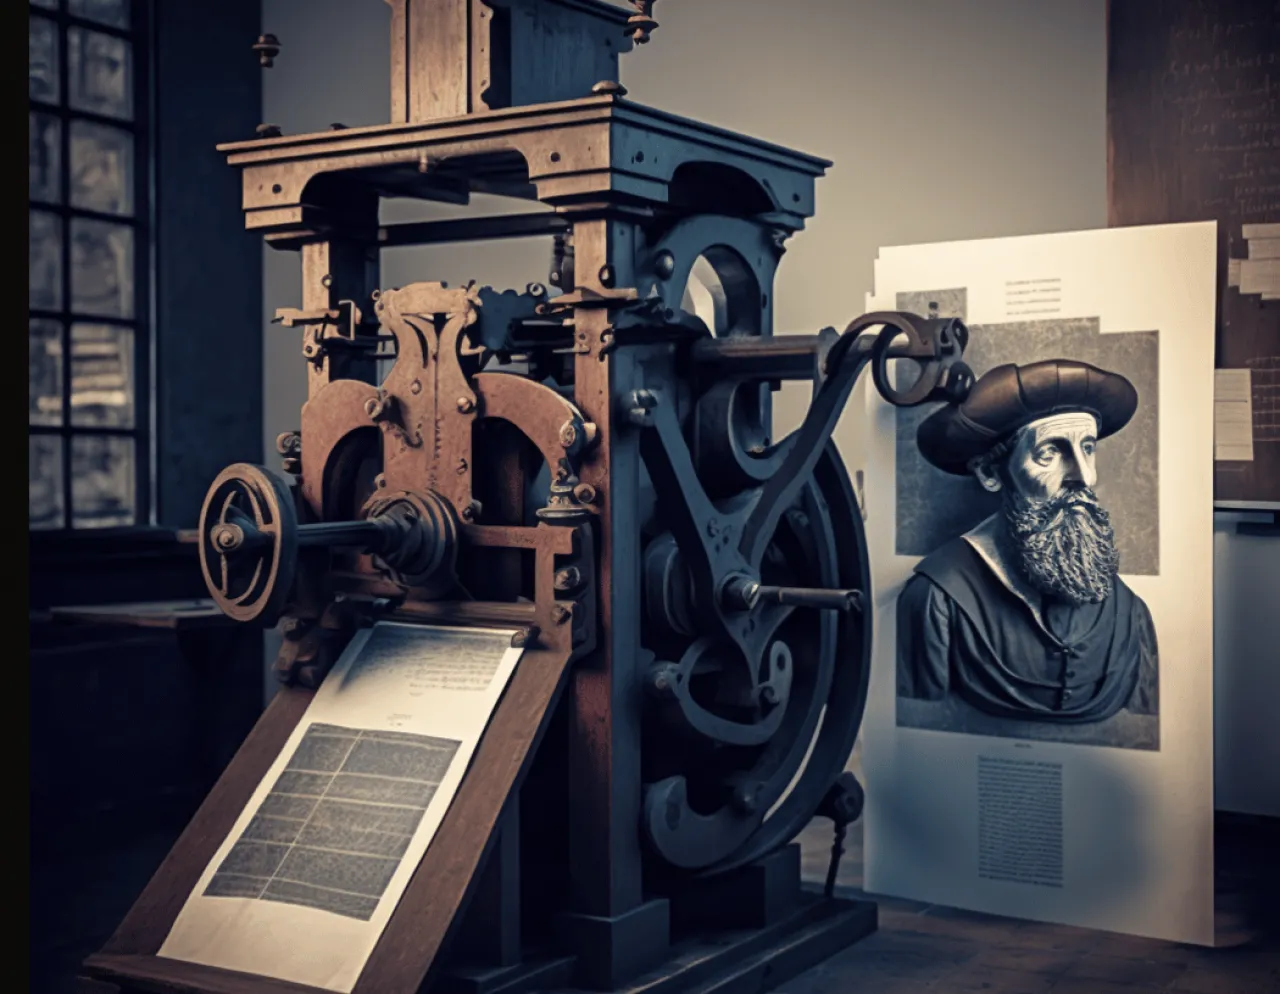 A nyomtatás fejlődése Gutenbergtől a digitális korszakig